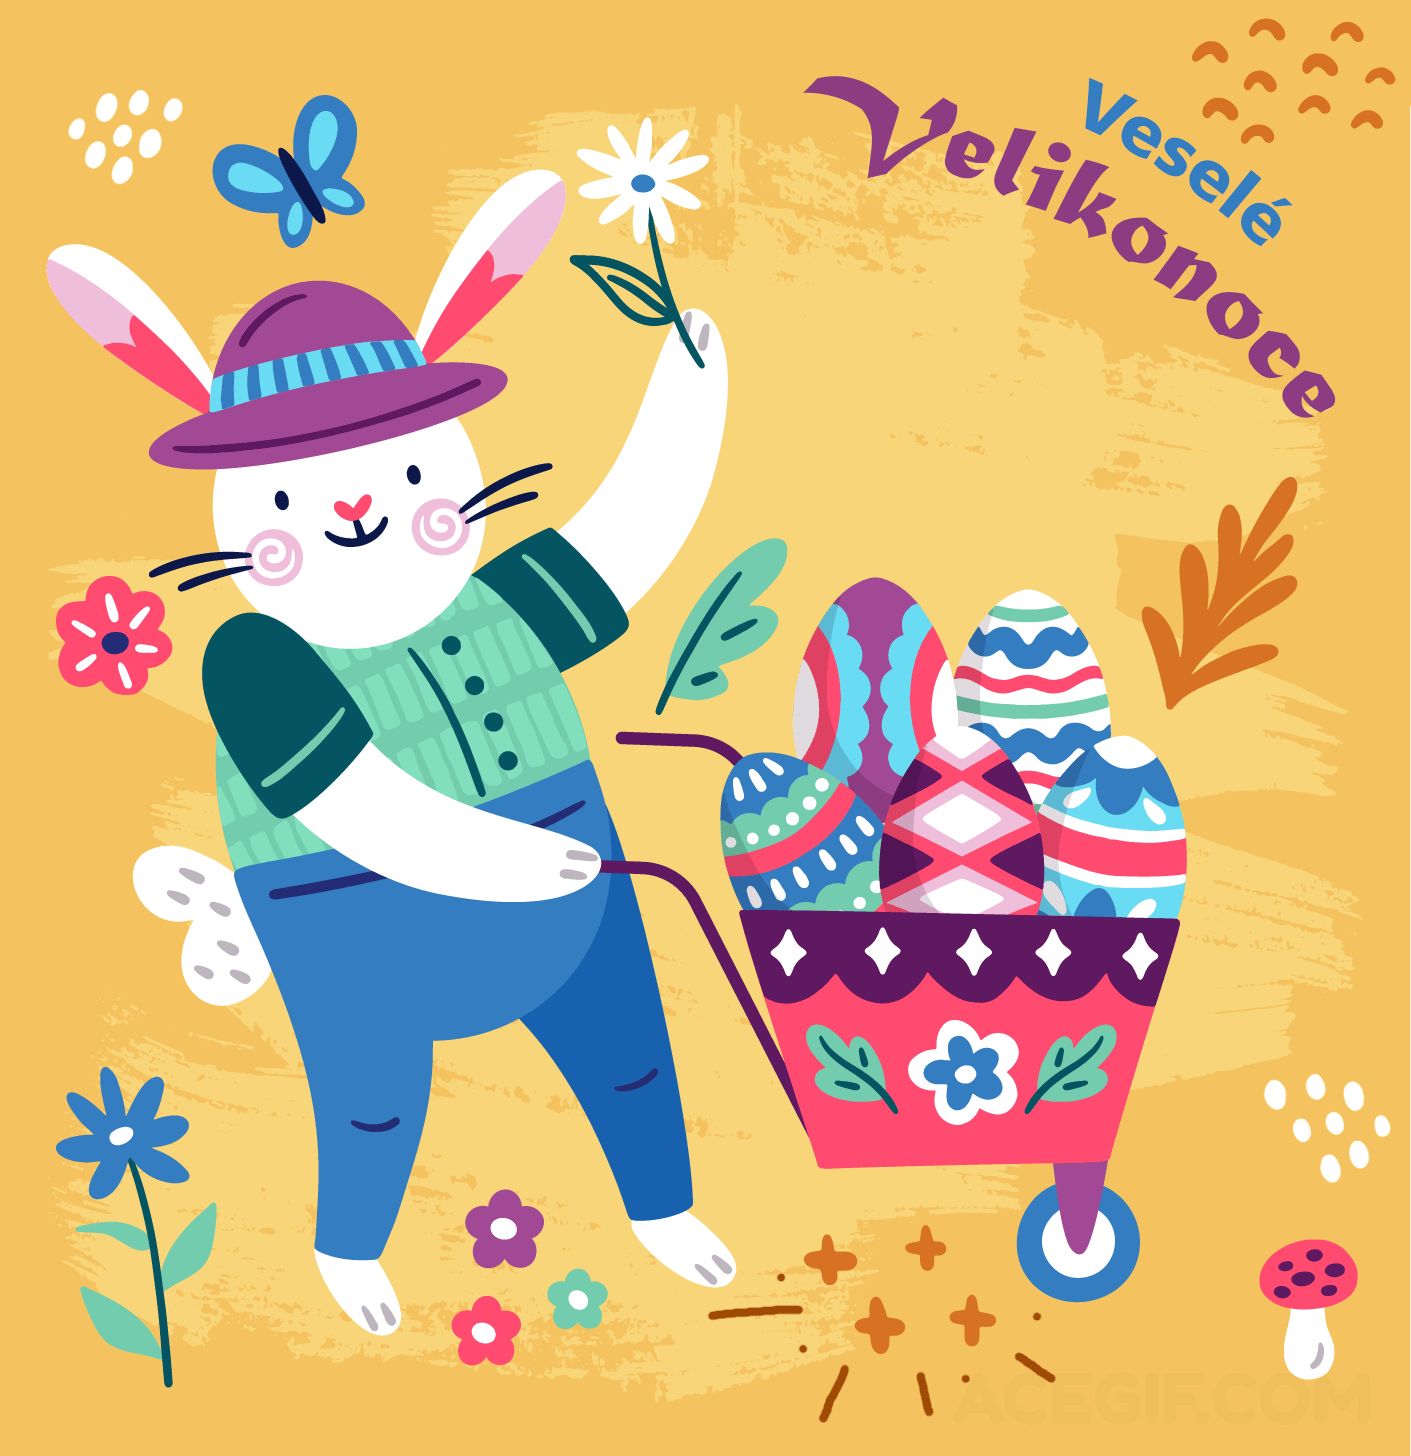 Veselé Velikonoce GIFy - Animované velikonoční pohlednice